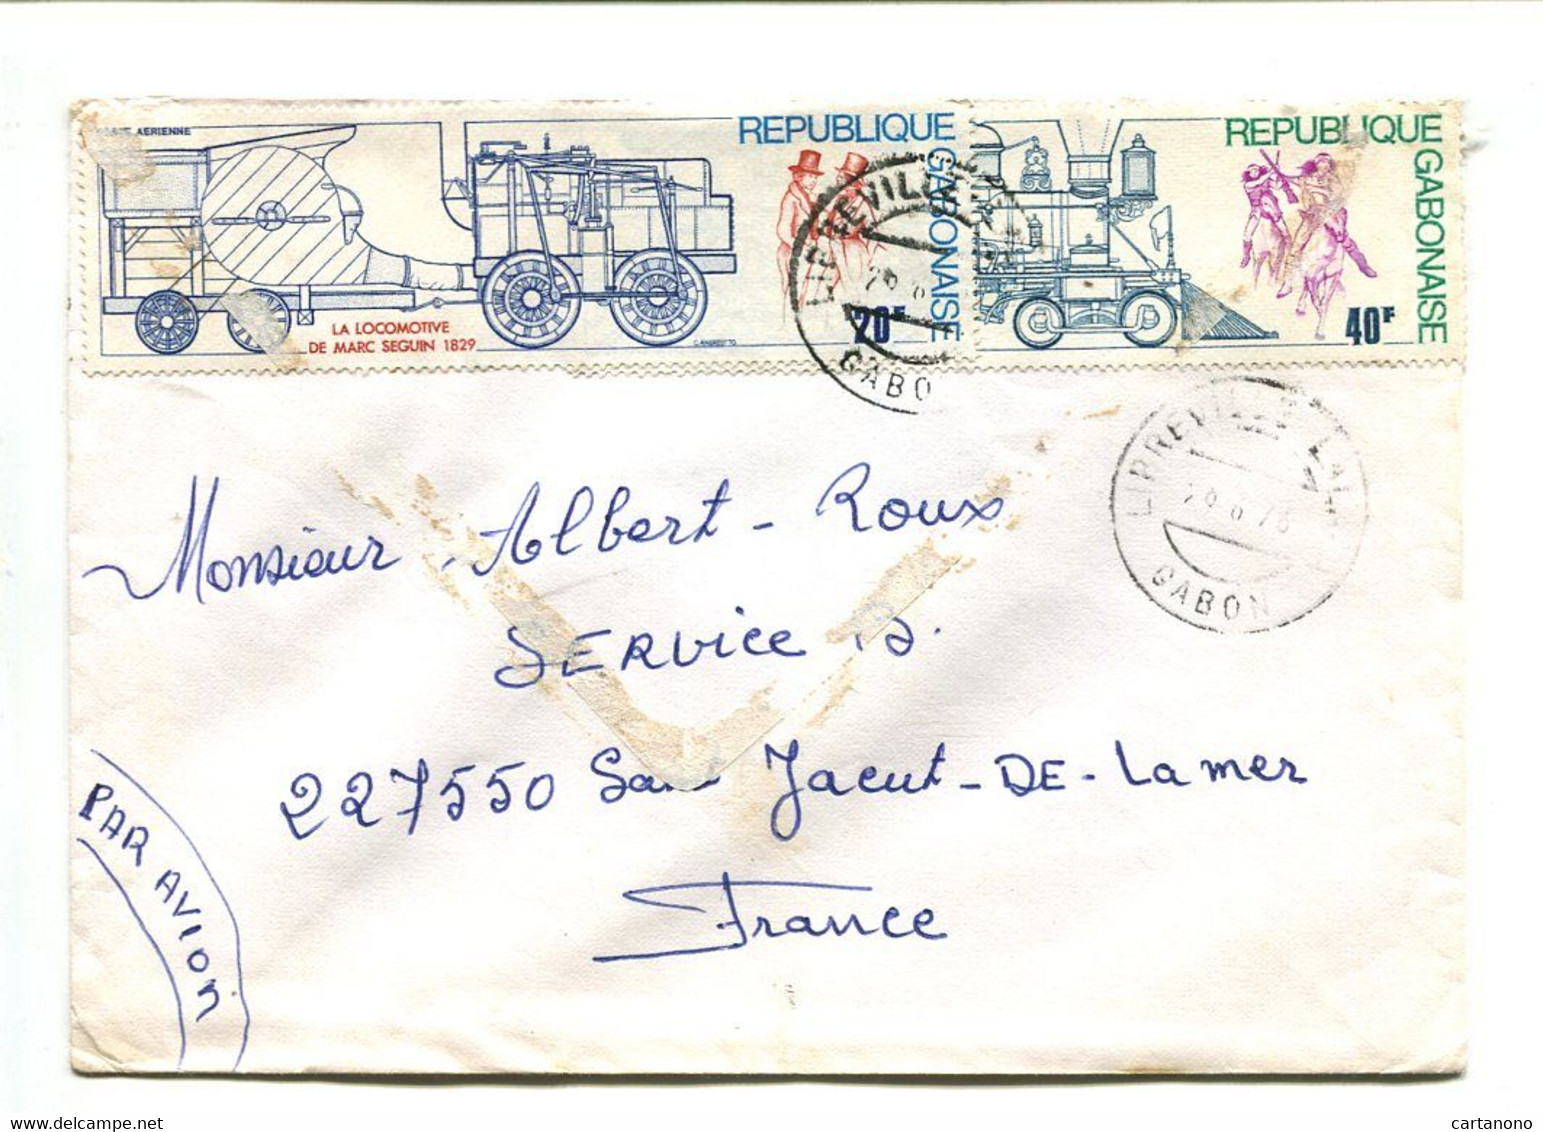 GABON Libreville1978 - Affranchissement Sur Lettre Par Avion -  Train Locomotive - Gabon